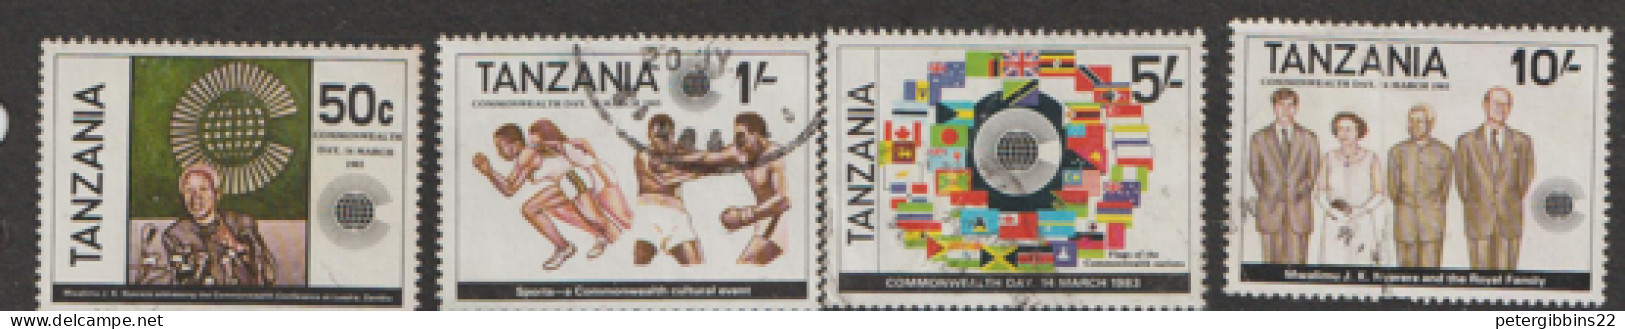 Tanzania   1982   SG 375-8   Commonwealth Day   Fine Used - Tanzanie (1964-...)